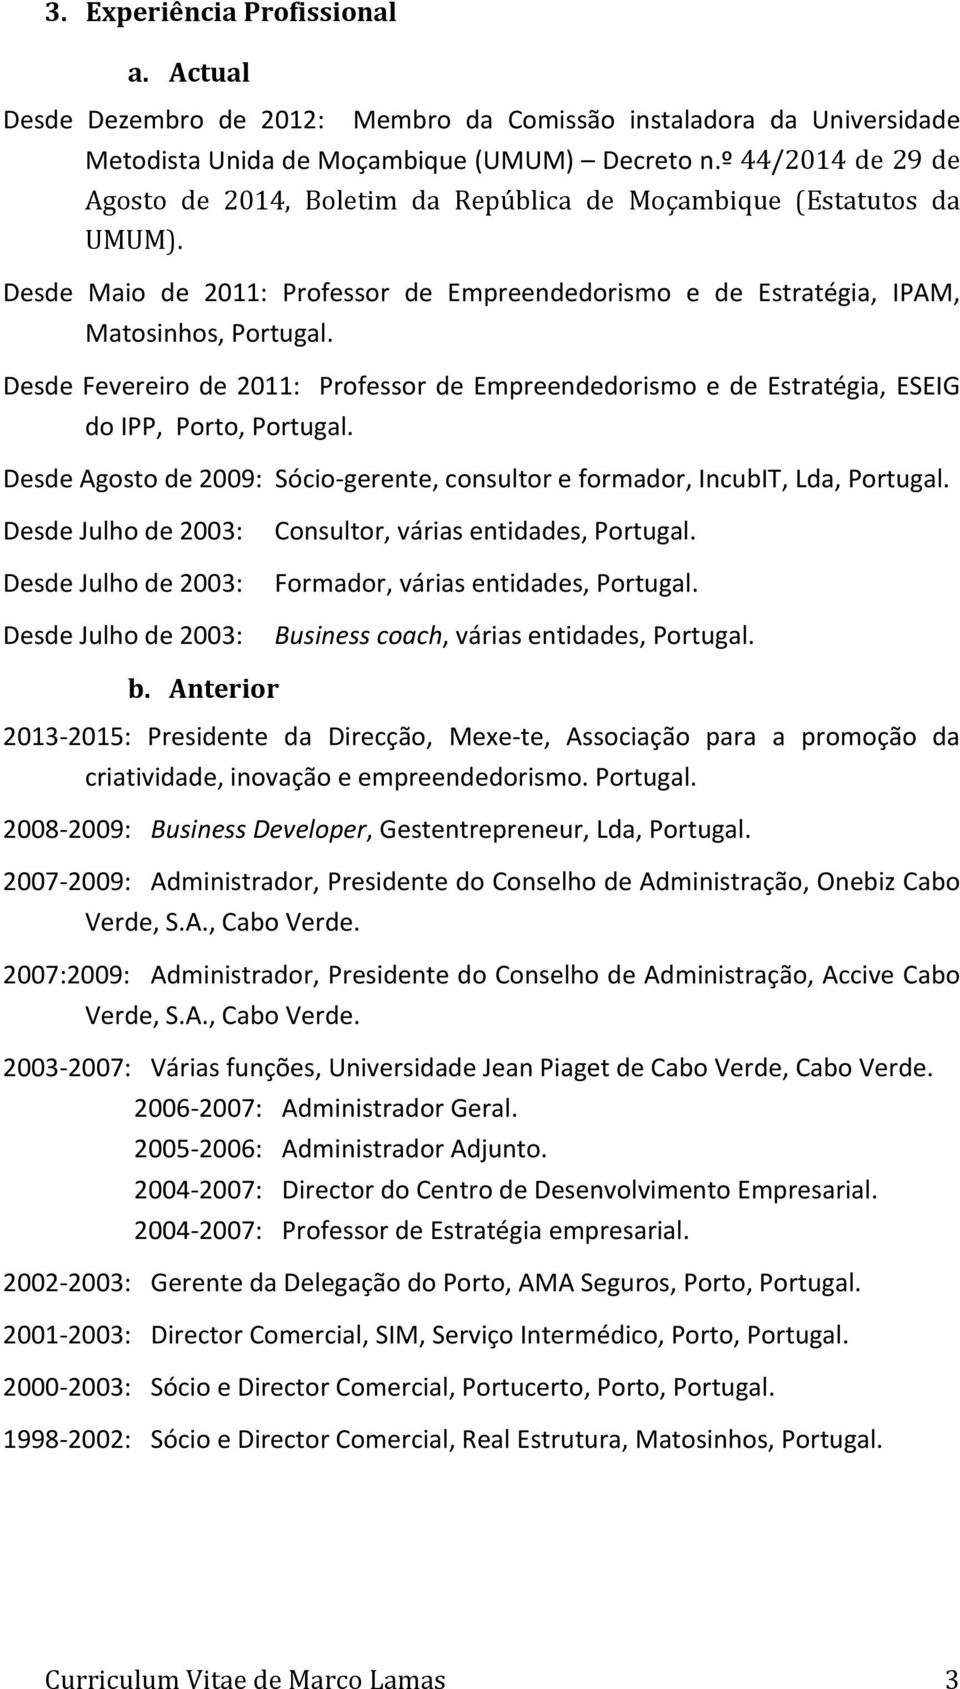 Desde Fevereiro de 2011: Professor de Empreendedorismo e de Estratégia, ESEIG do IPP, Porto, Portugal. Desde Agosto de 2009: Sócio- gerente, consultor e formador, IncubIT, Lda, Portugal.